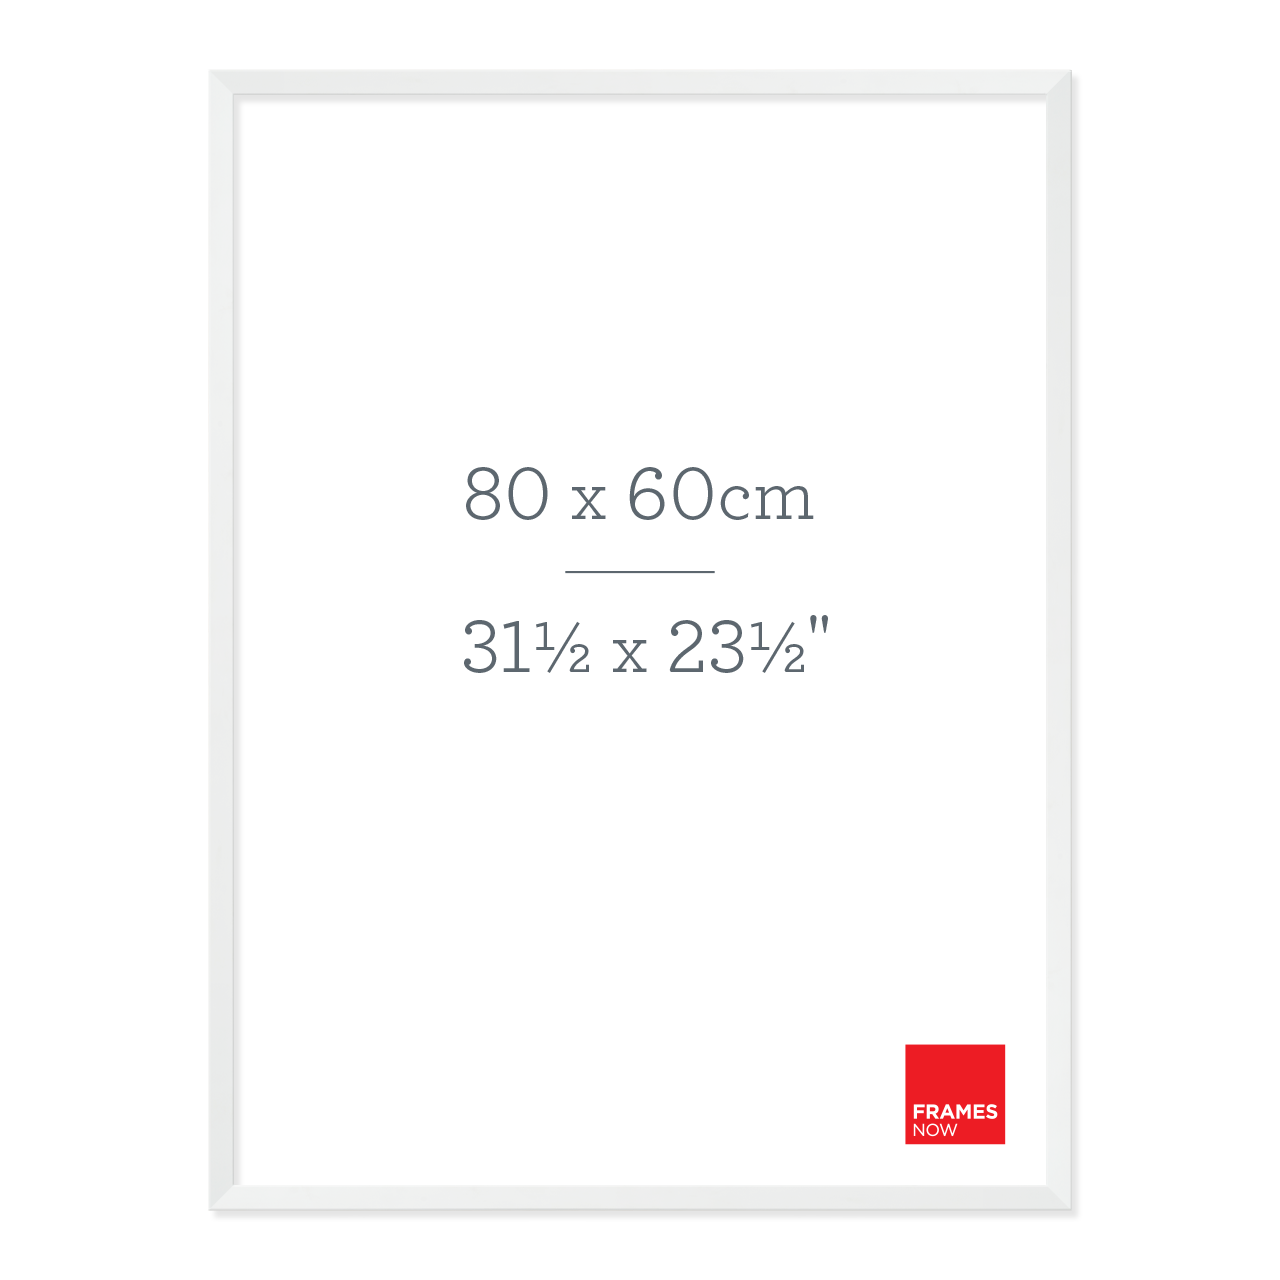 Premium Matte White Box Picture Frame for 80 x 60cm Artwork